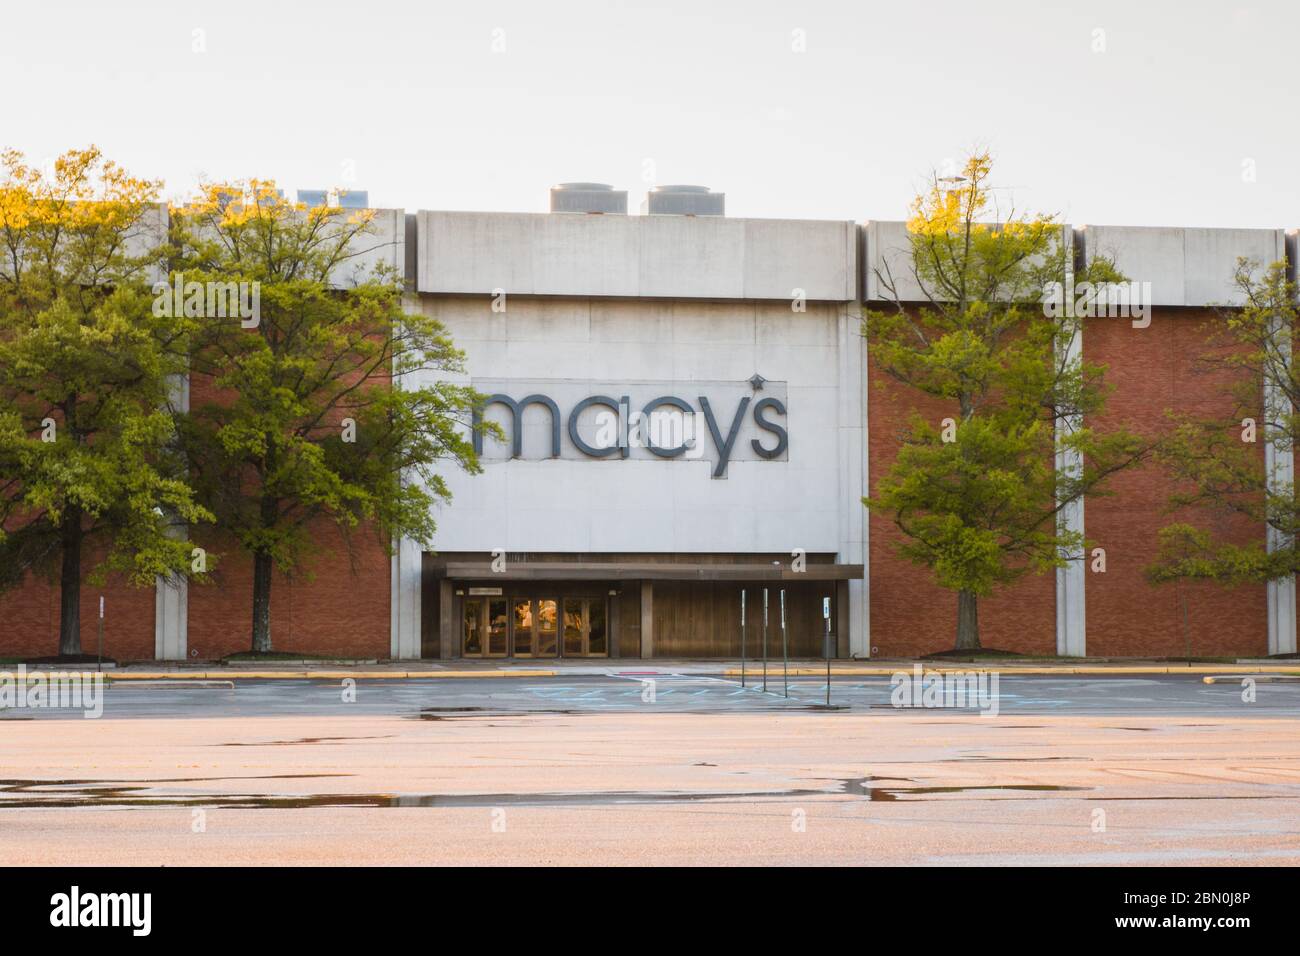 Covid-19 von 2020 zwingt Einzelhandelsgeschäfte zu schließen. Bild eines leeren Parkplatzes vor einem Macy's-Einzelhandelsgeschäft in New Jersey. Stockfoto